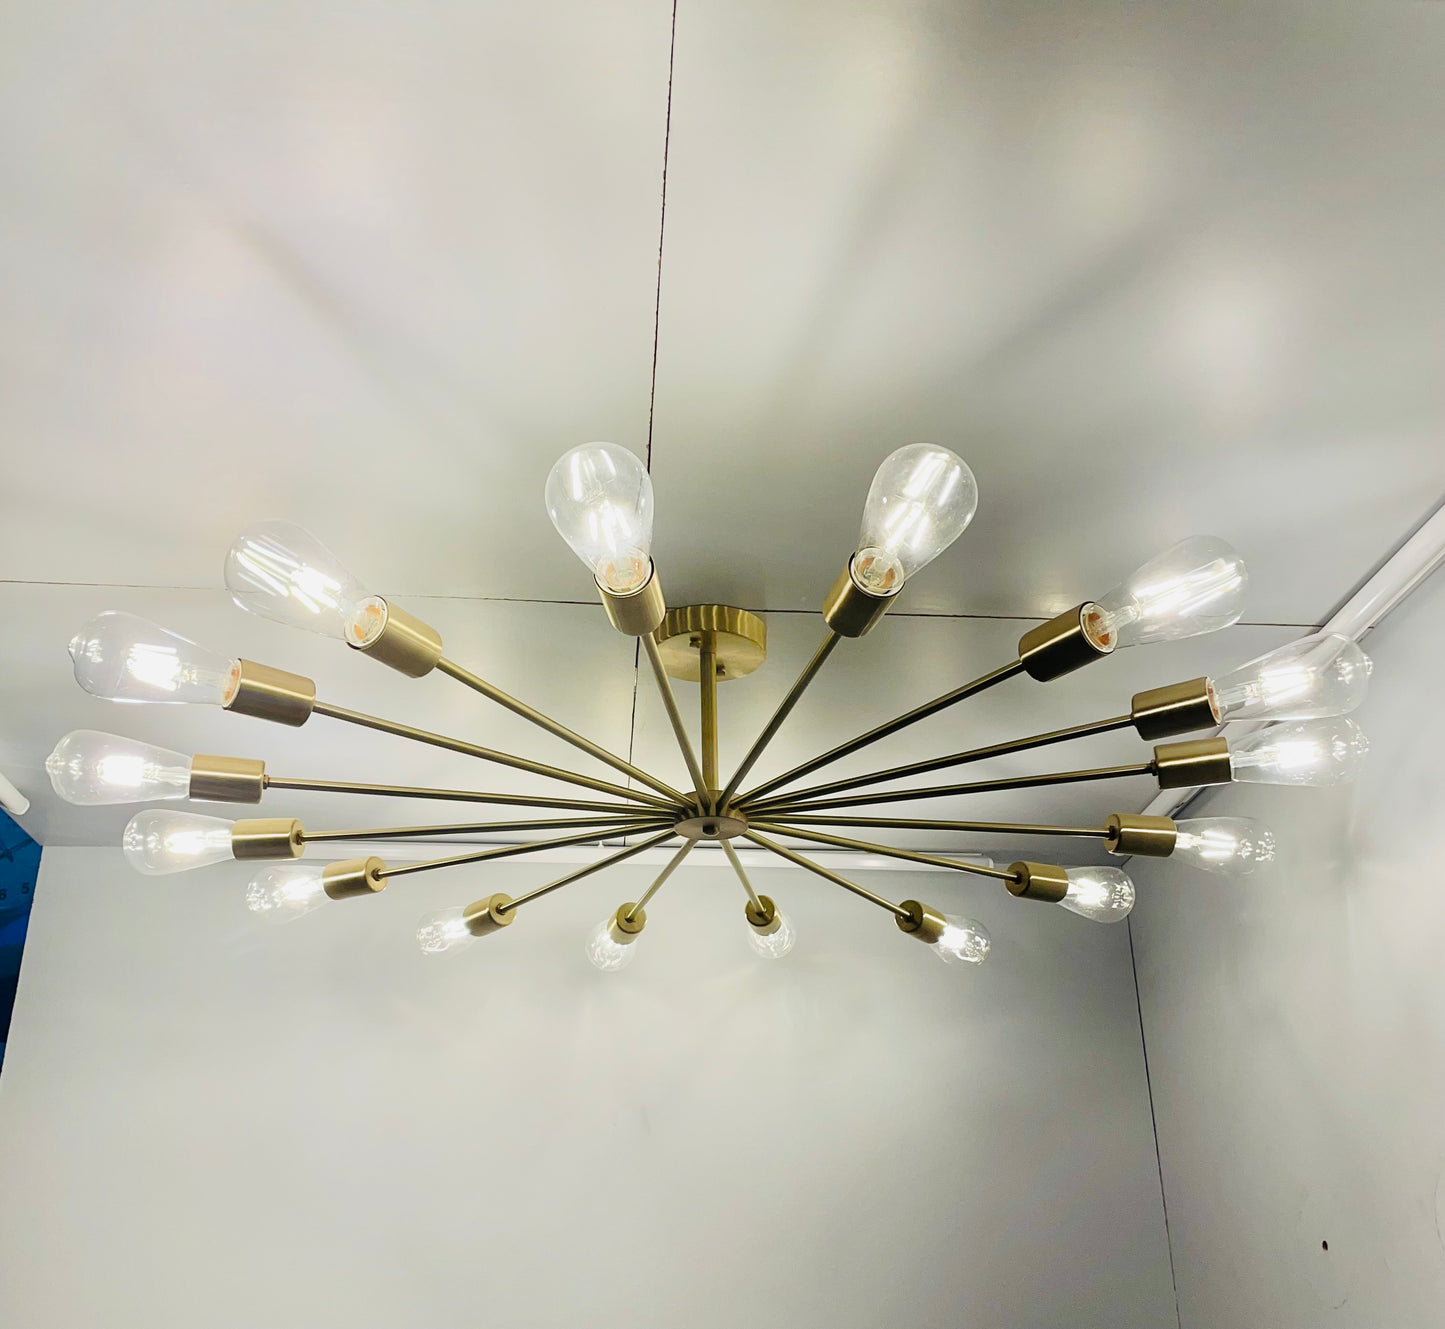 Global Lights Hub 16 Lights/Arms Large Sputnik Brass Chandelier Stilnovo Style - Global Lights Hub